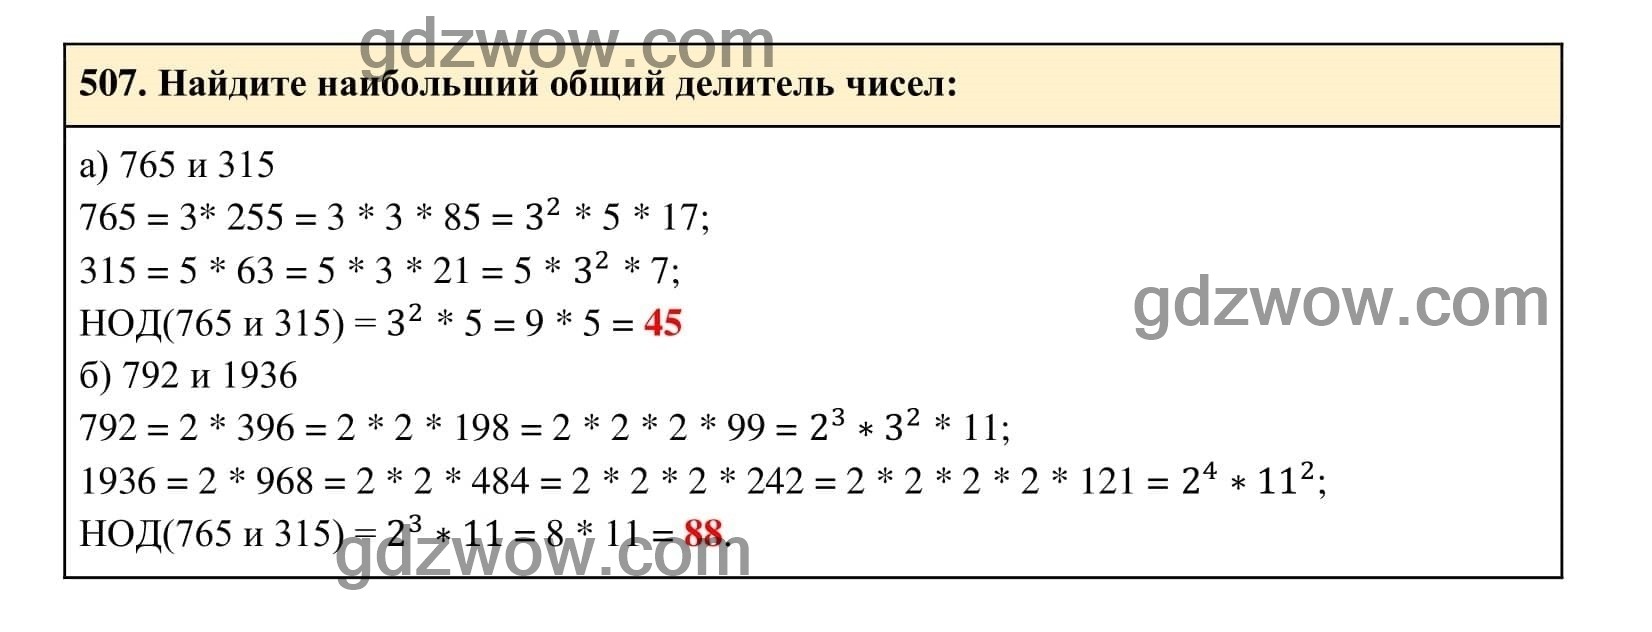 Упражнение 507 - ГДЗ по Алгебре 7 класс Учебник Макарычев (решебник) - GDZwow